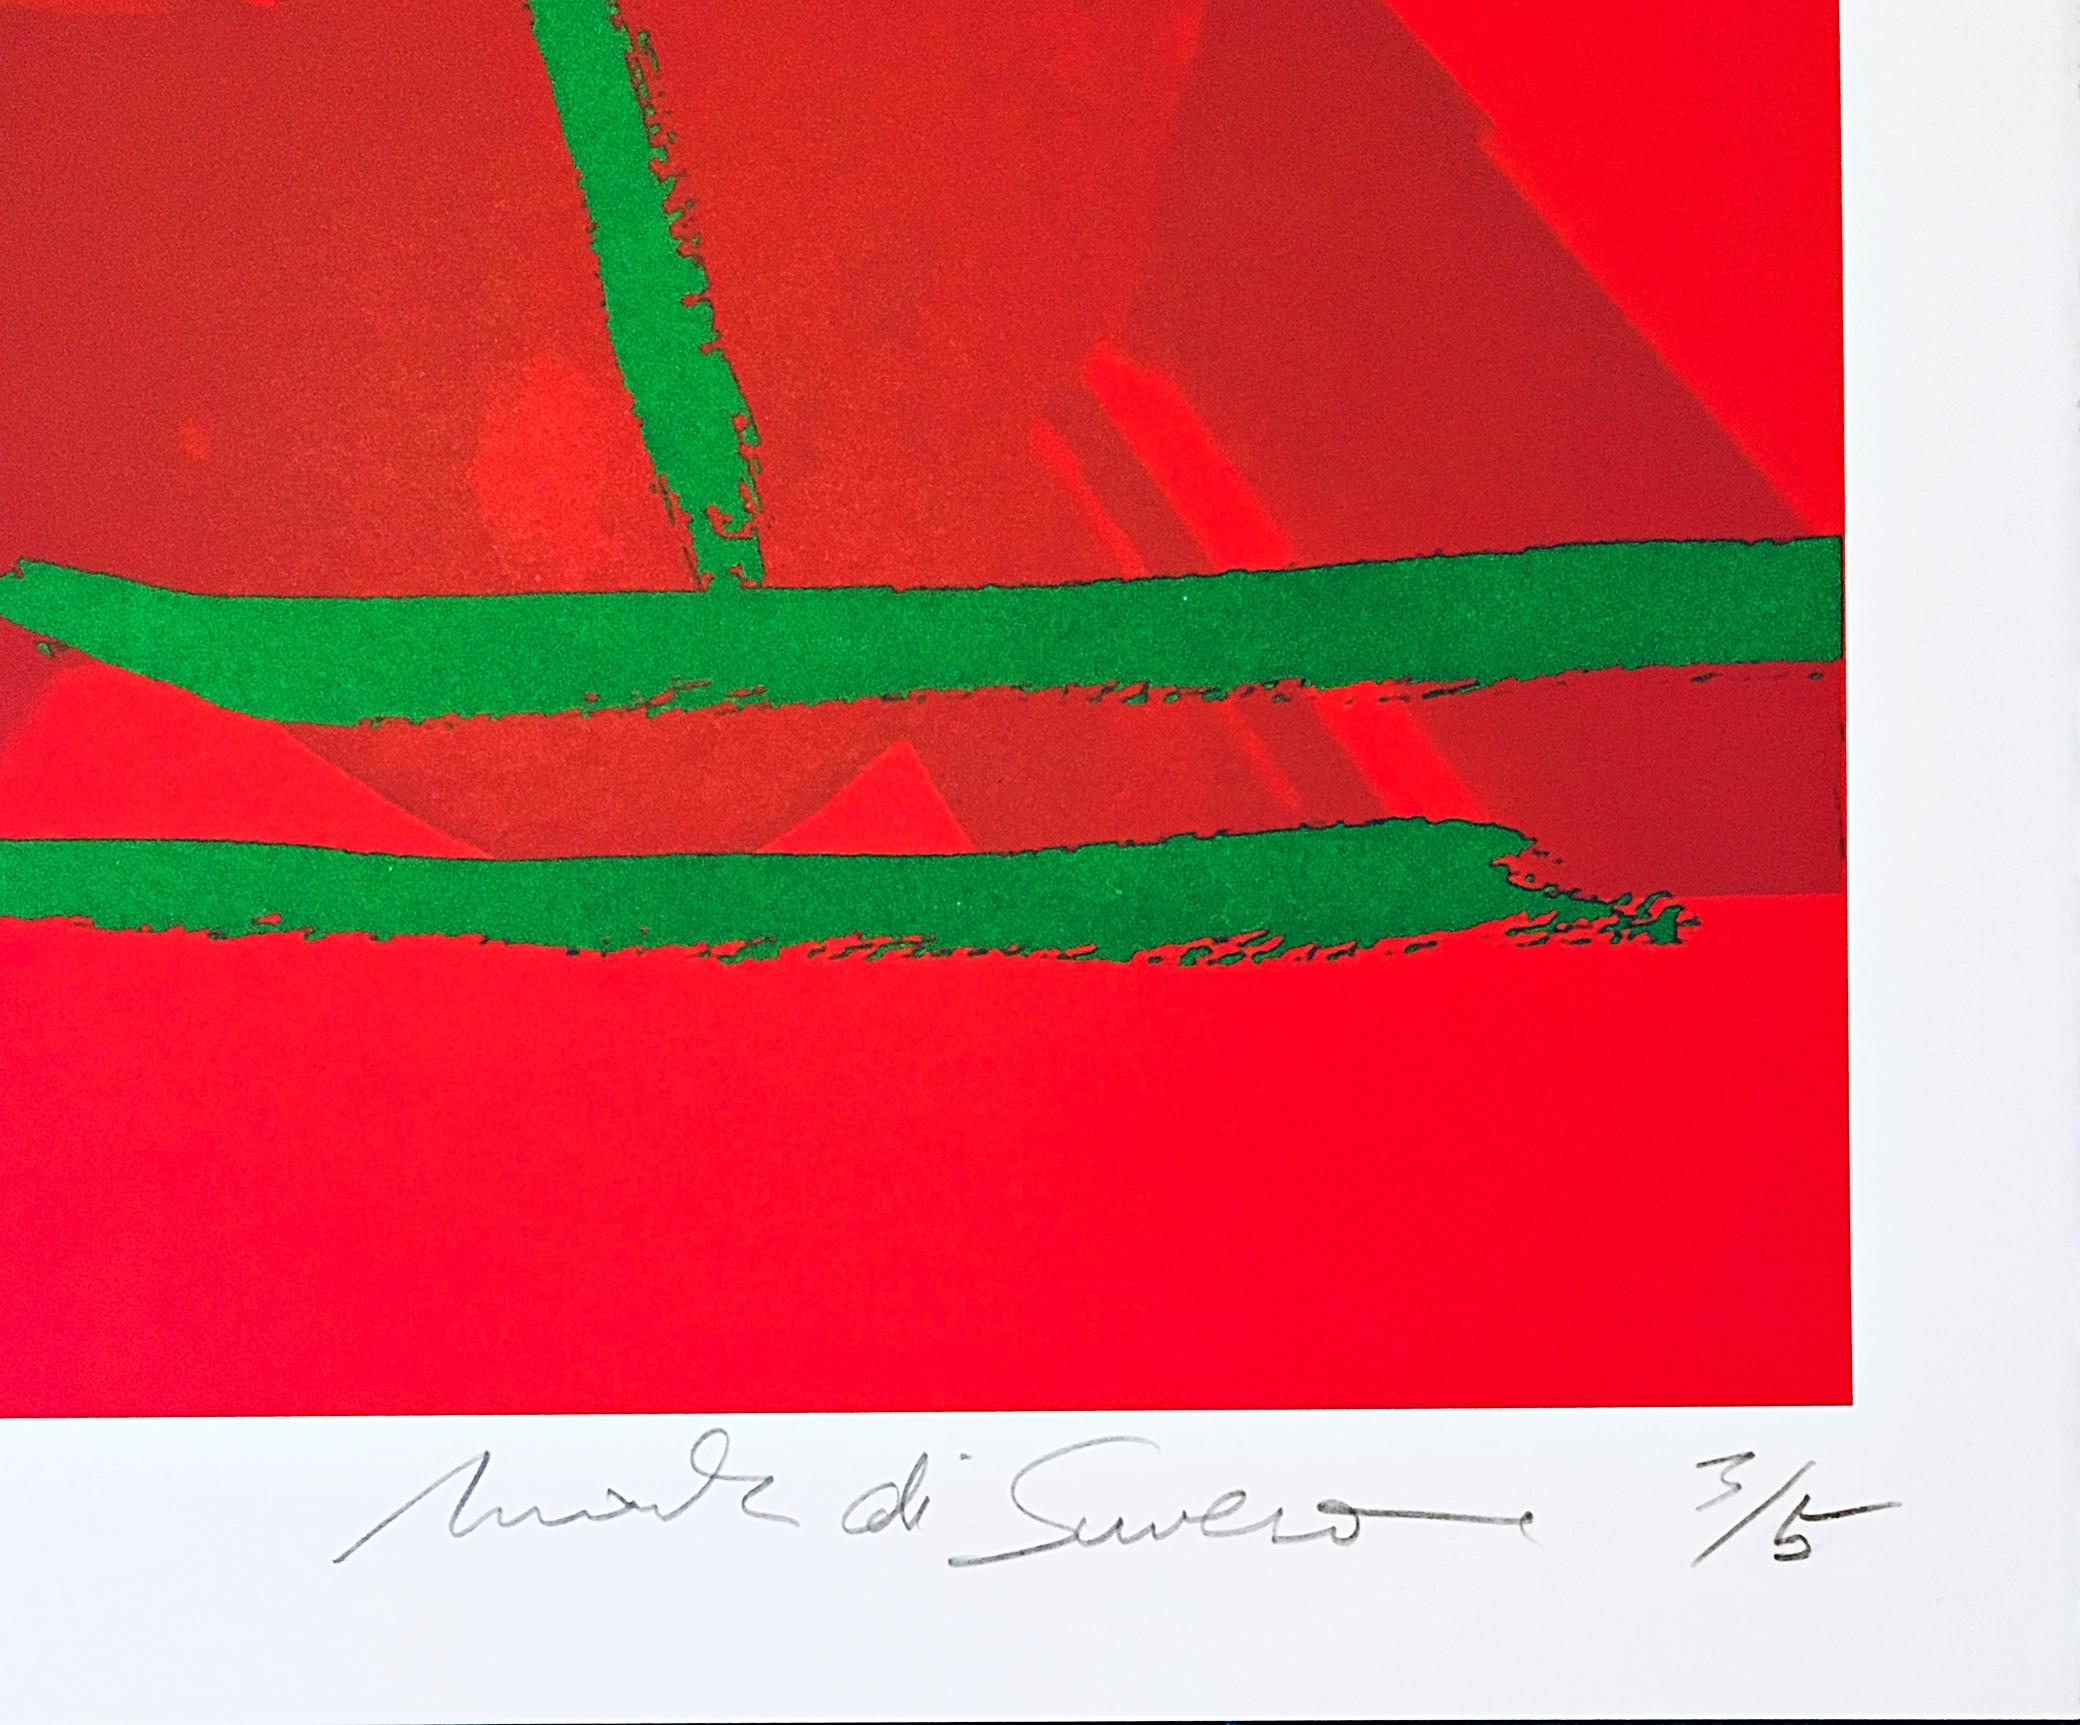 Future Shadow II, lithographie expressionniste abstraite signée et numérotée 3/5  - Print de Mark di Suvero